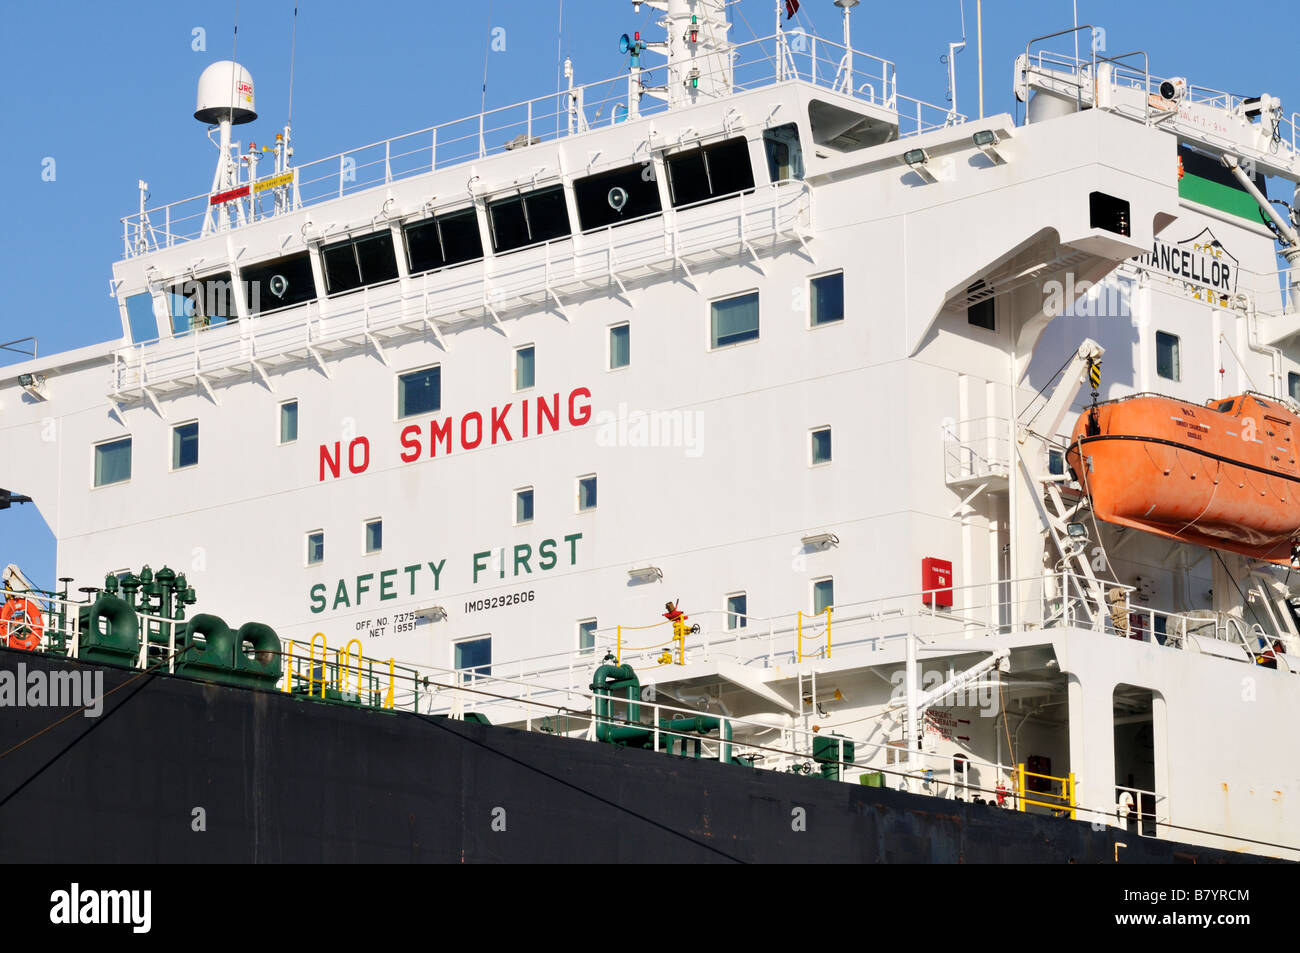 Schiffs-Brücke mit Elektronik Satelliten Kommunikation Radar Antennen Rettungsboot und kein Rauchen und Sicherheit erste Anzeichen Stockfoto